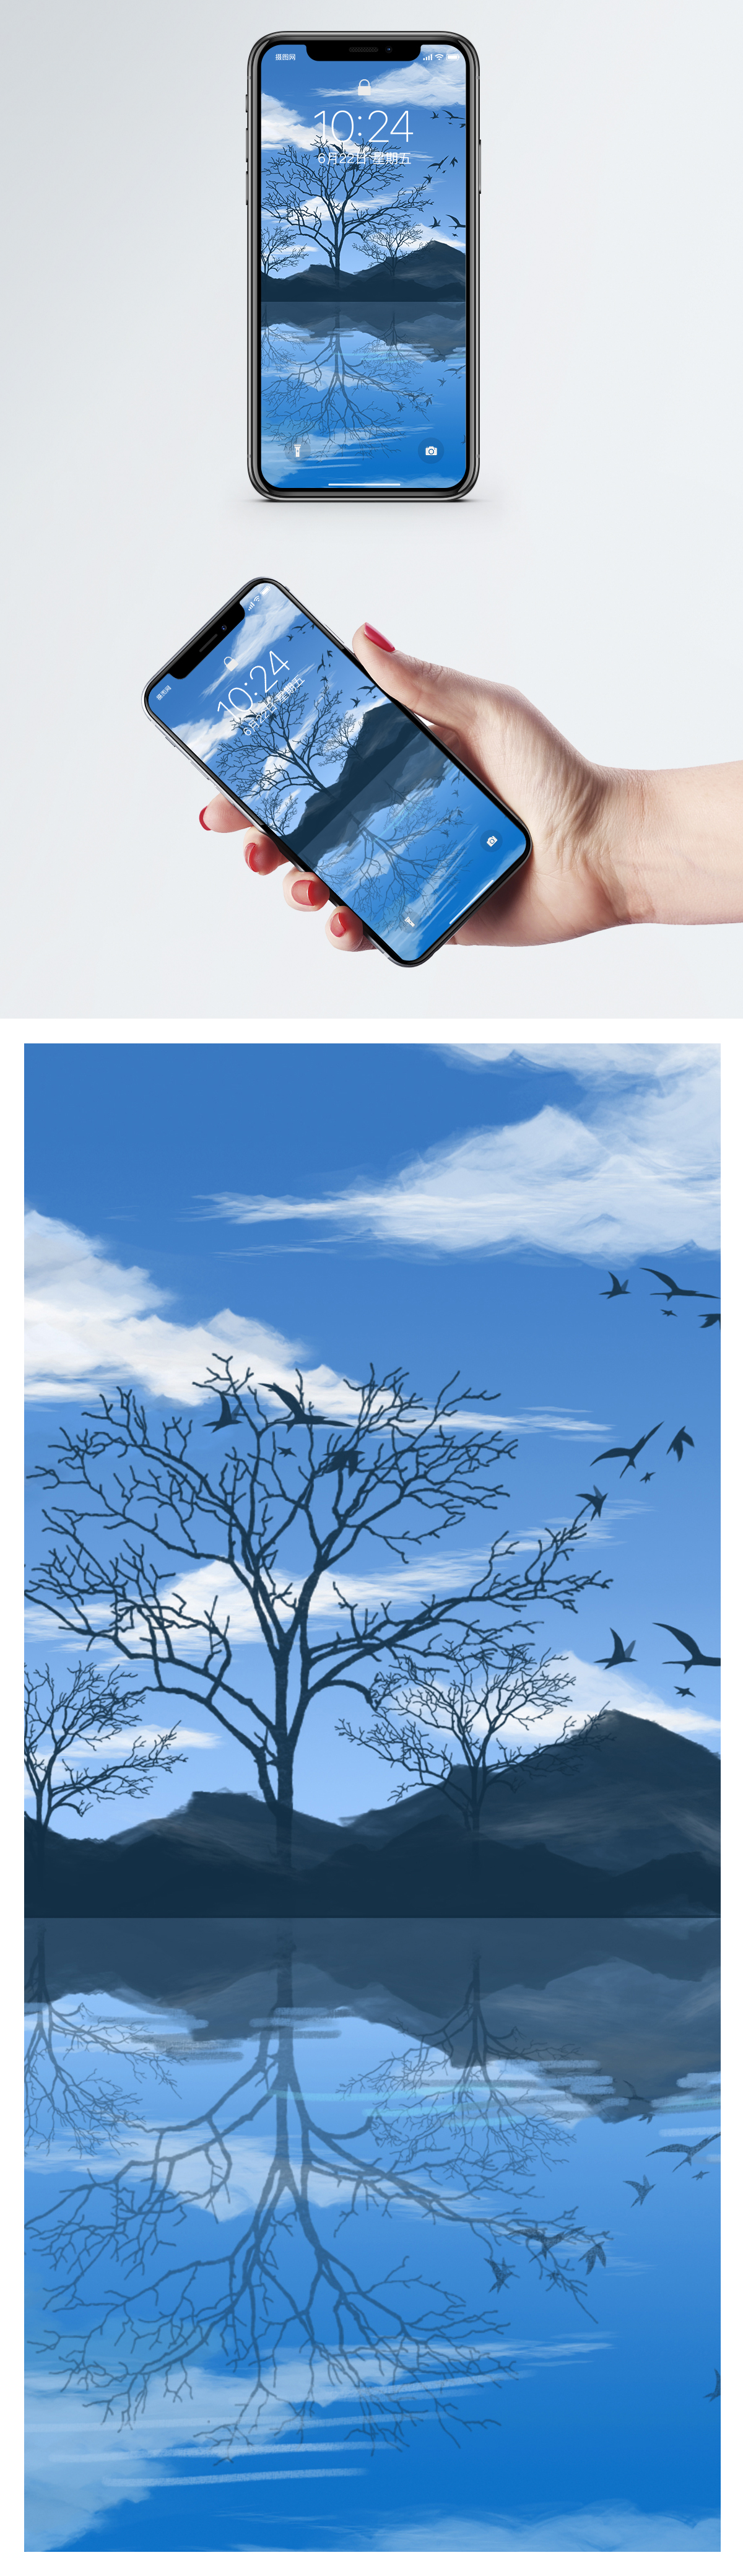 イラスト秋の風景の携帯電話の壁紙イメージ 背景 Id 400414966 Prf画像フォーマットjpg Jp Lovepik Com